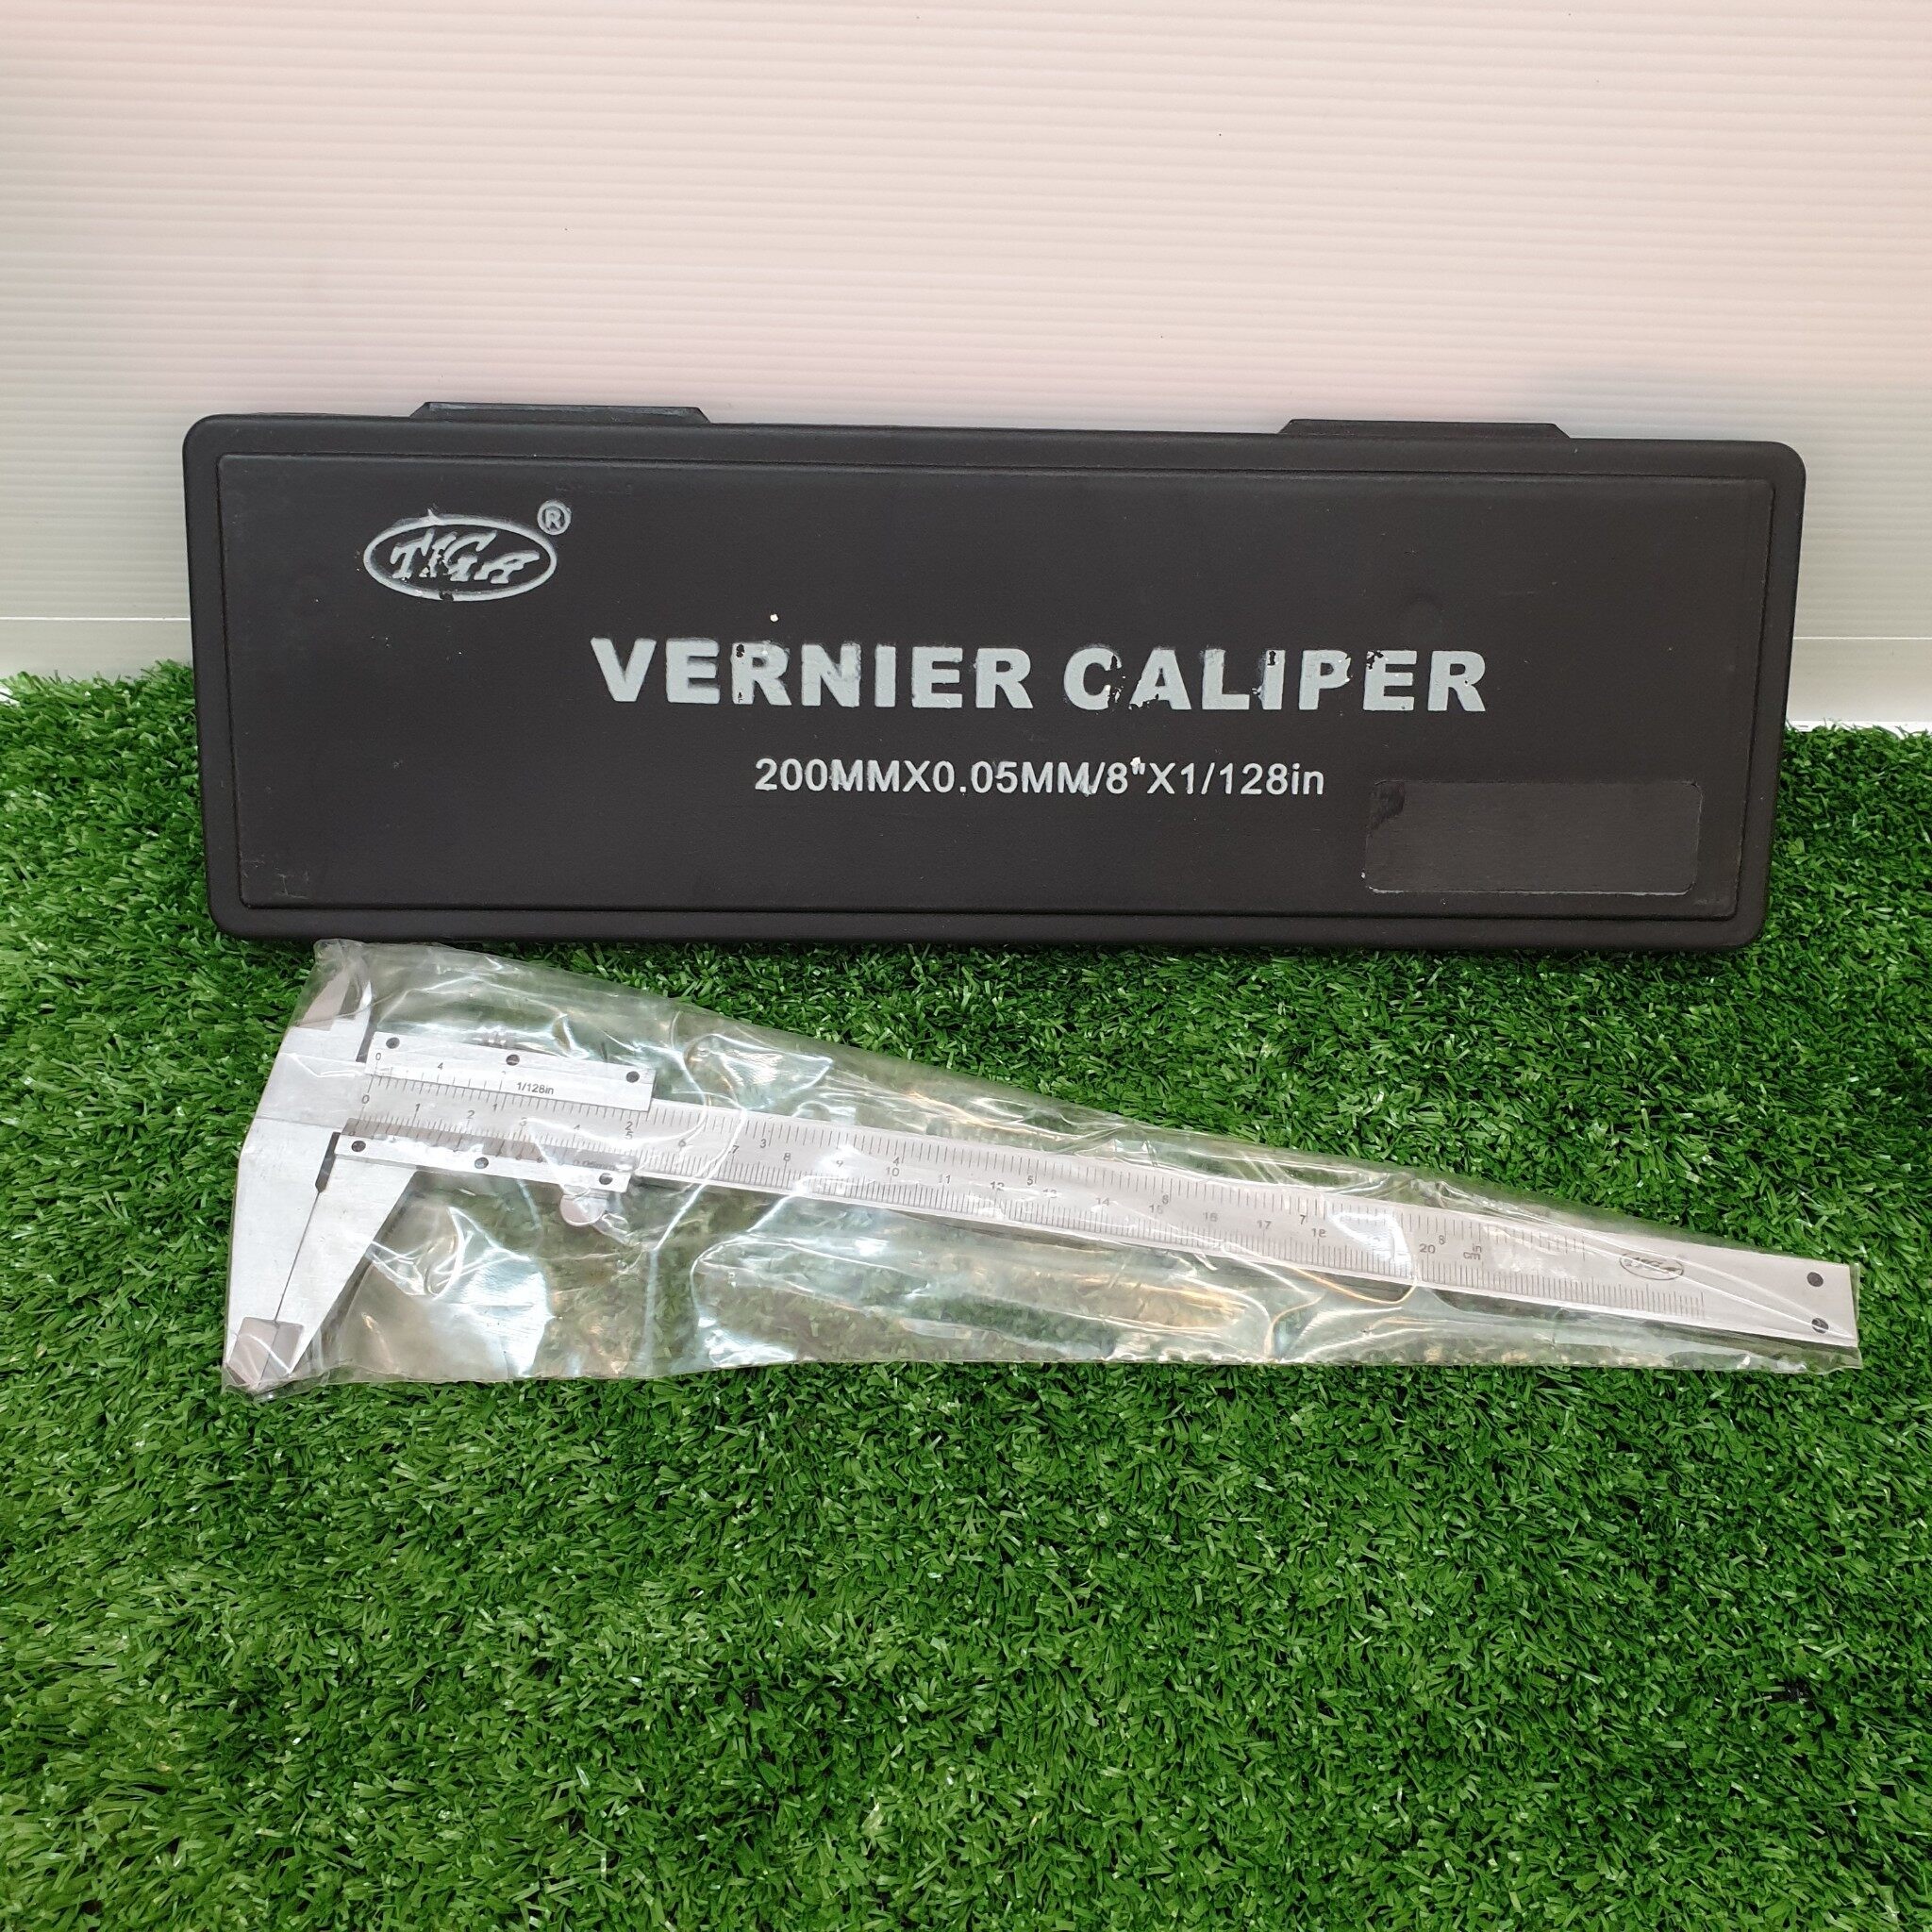 เวอร์เนียร์ คาลิปเปอร์ (Vernier caliper) ขนาด 8 นิ้ว ยี่ห้อ TIGA